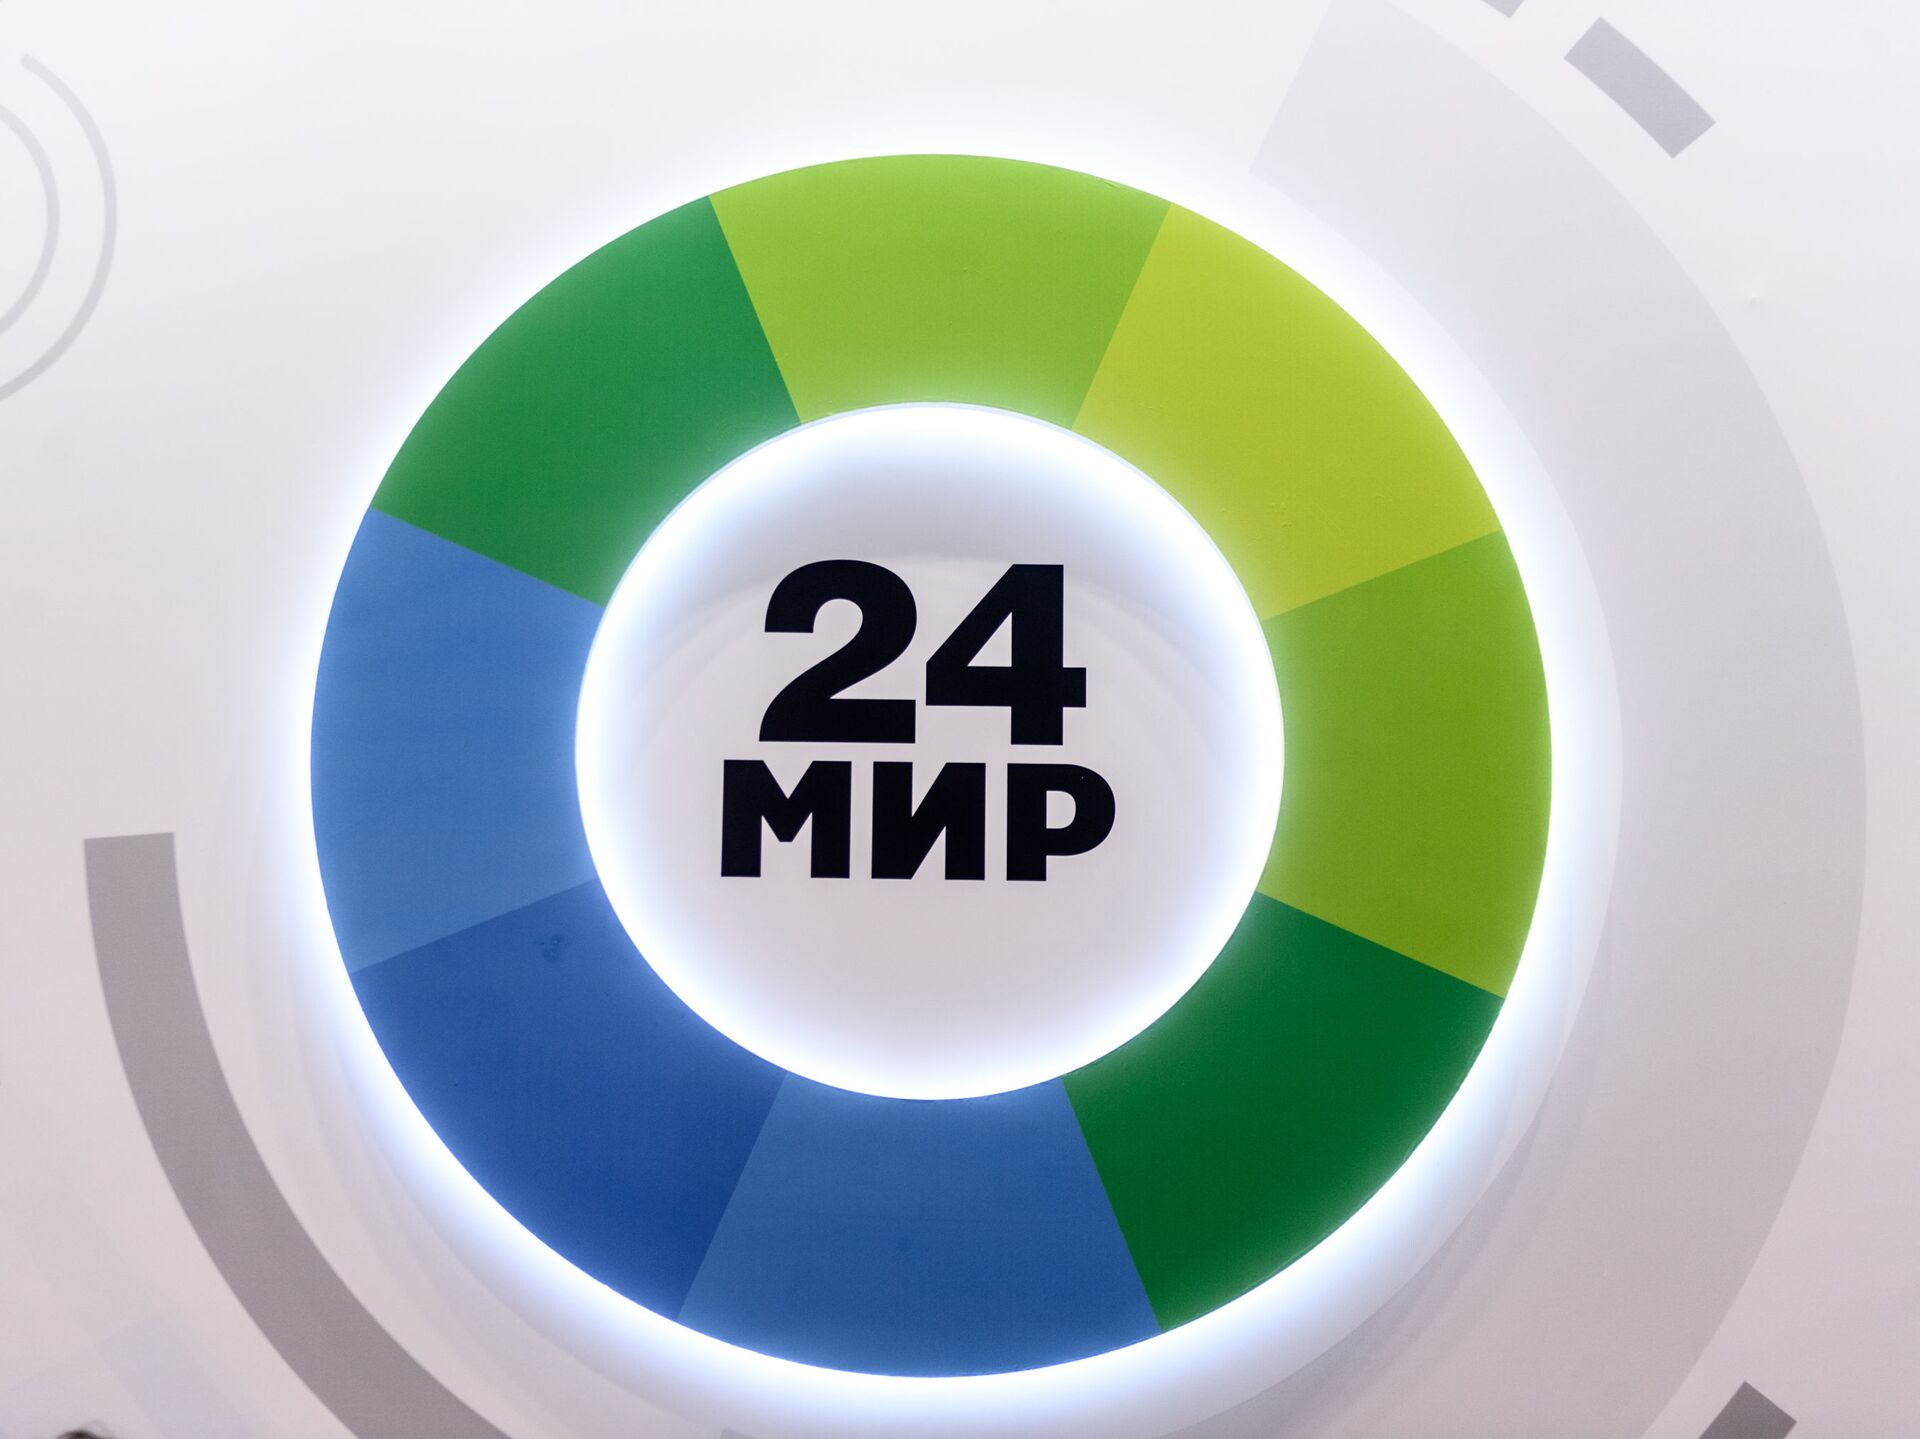 Телеканал мир 24. Логотип телеканала мик24. Мир 24. Эмблема телеканала мир.